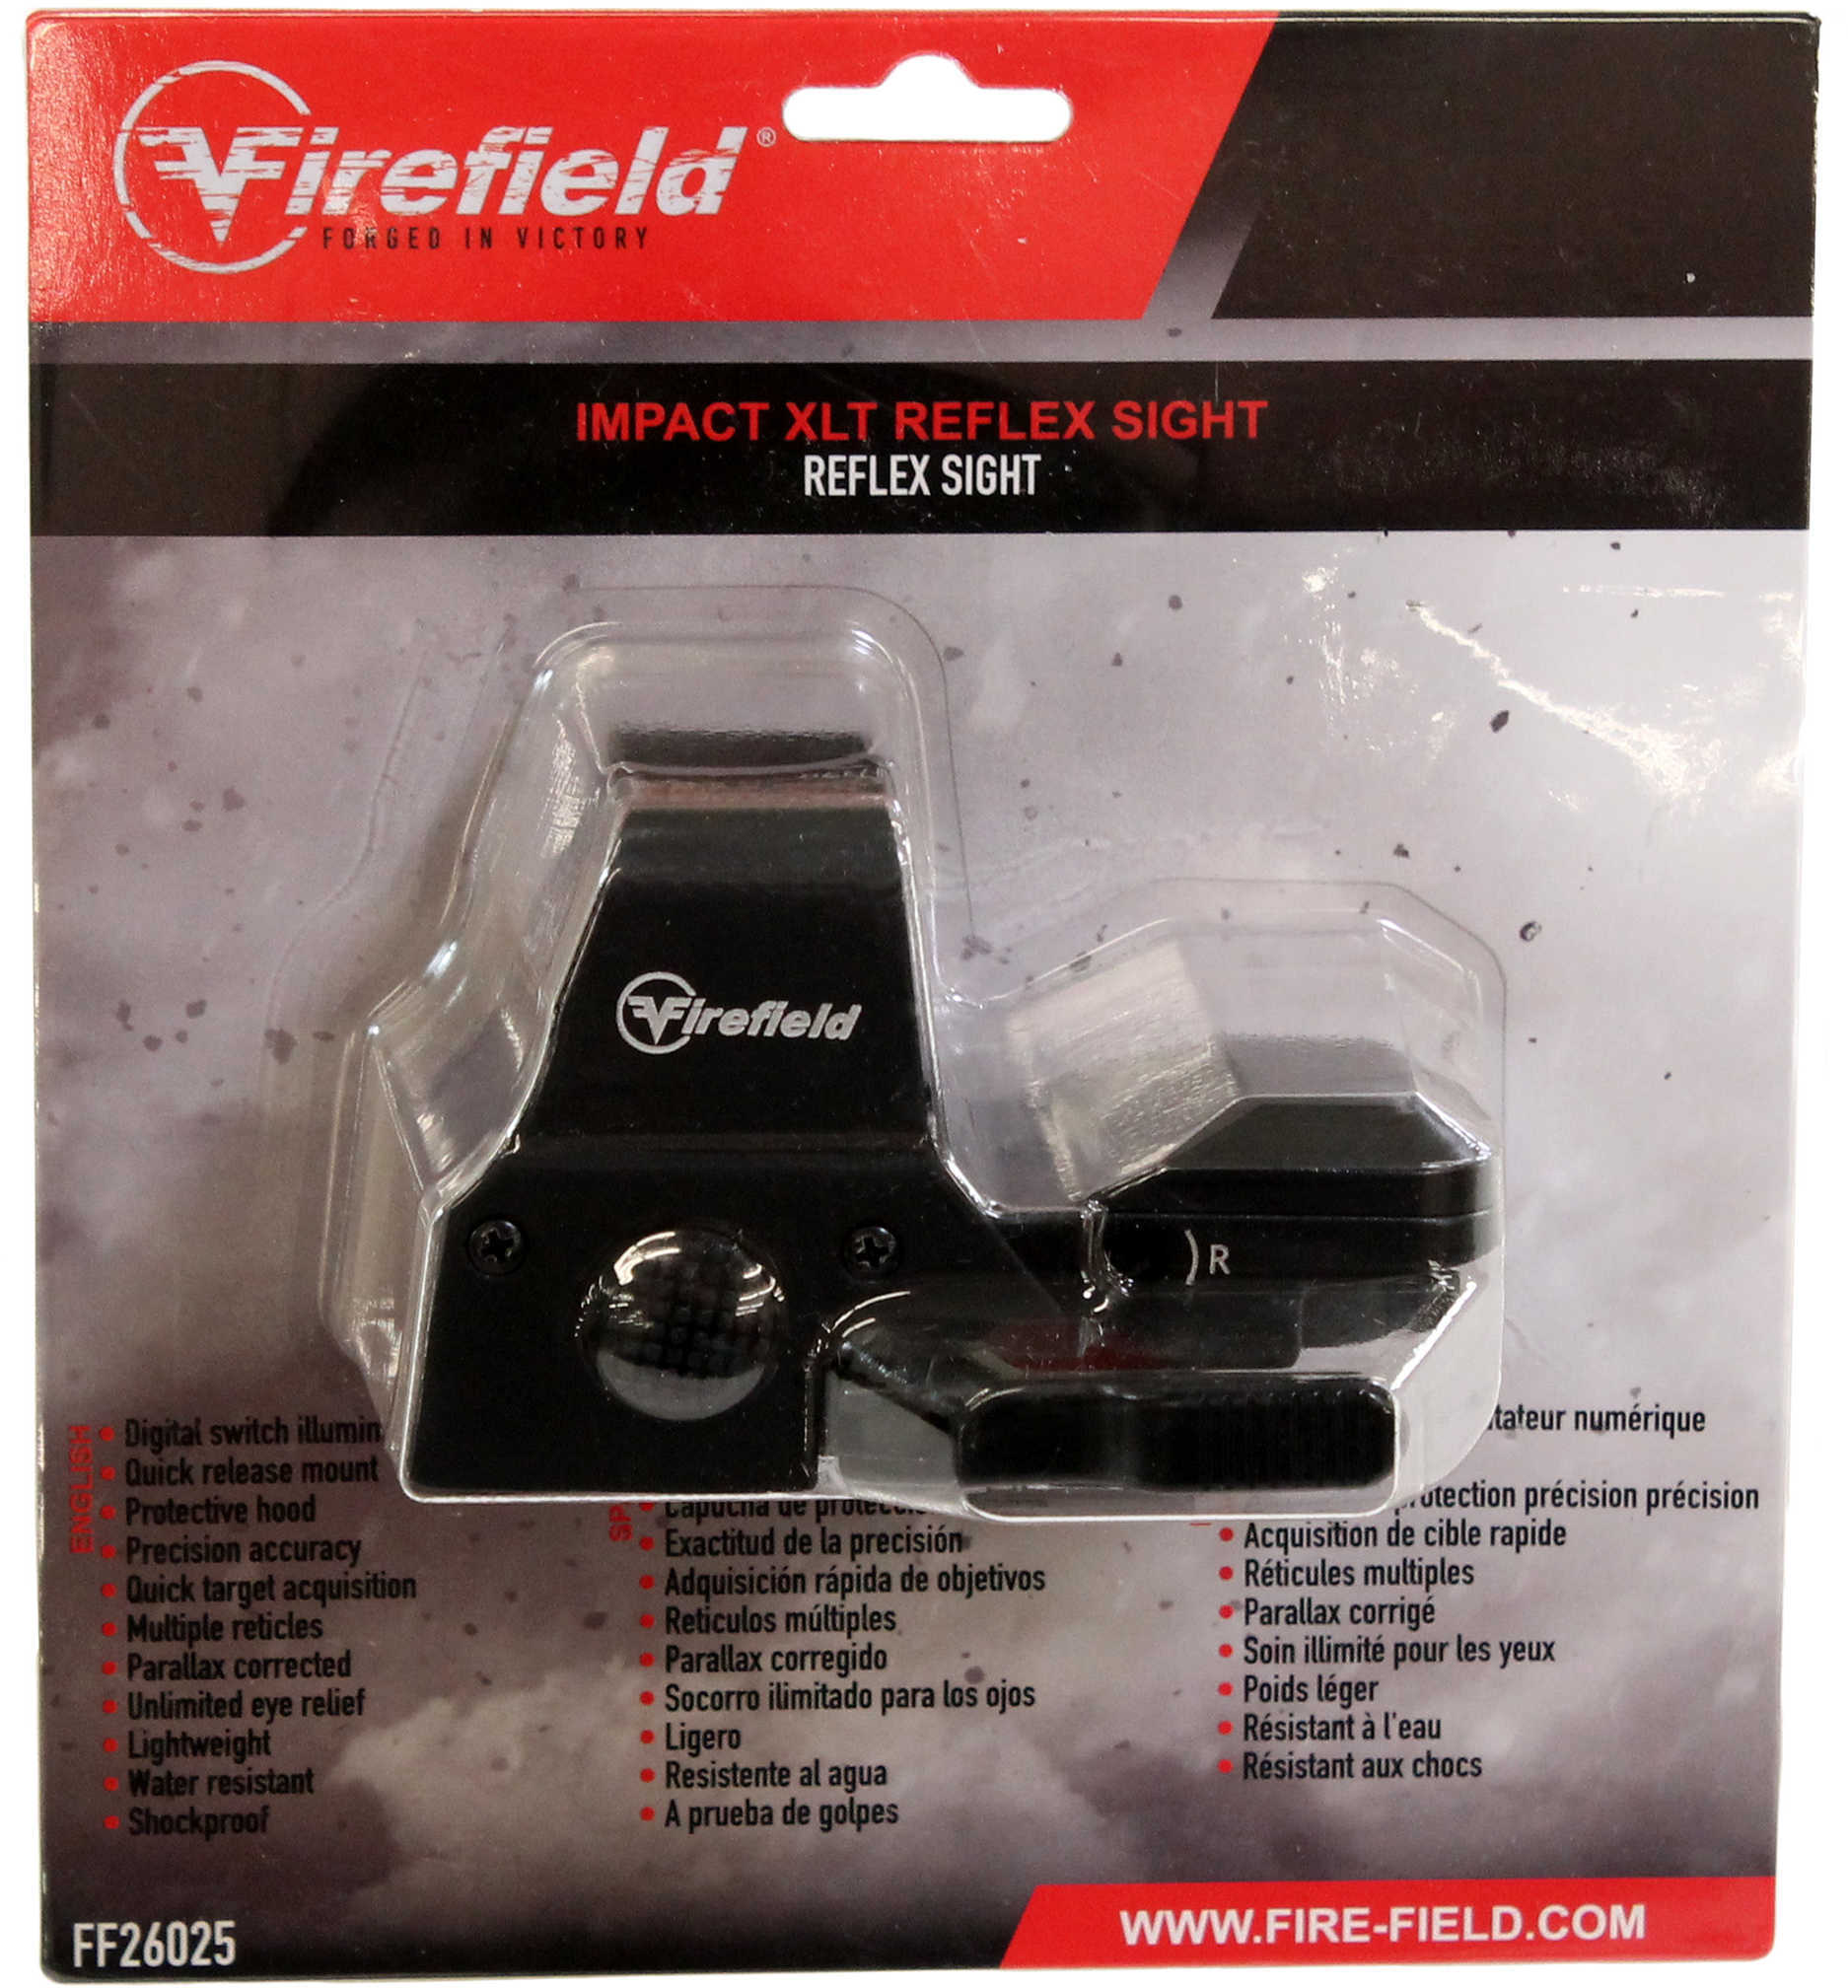 FIREFIELD IMPACT XLT REFLEX SIGHT